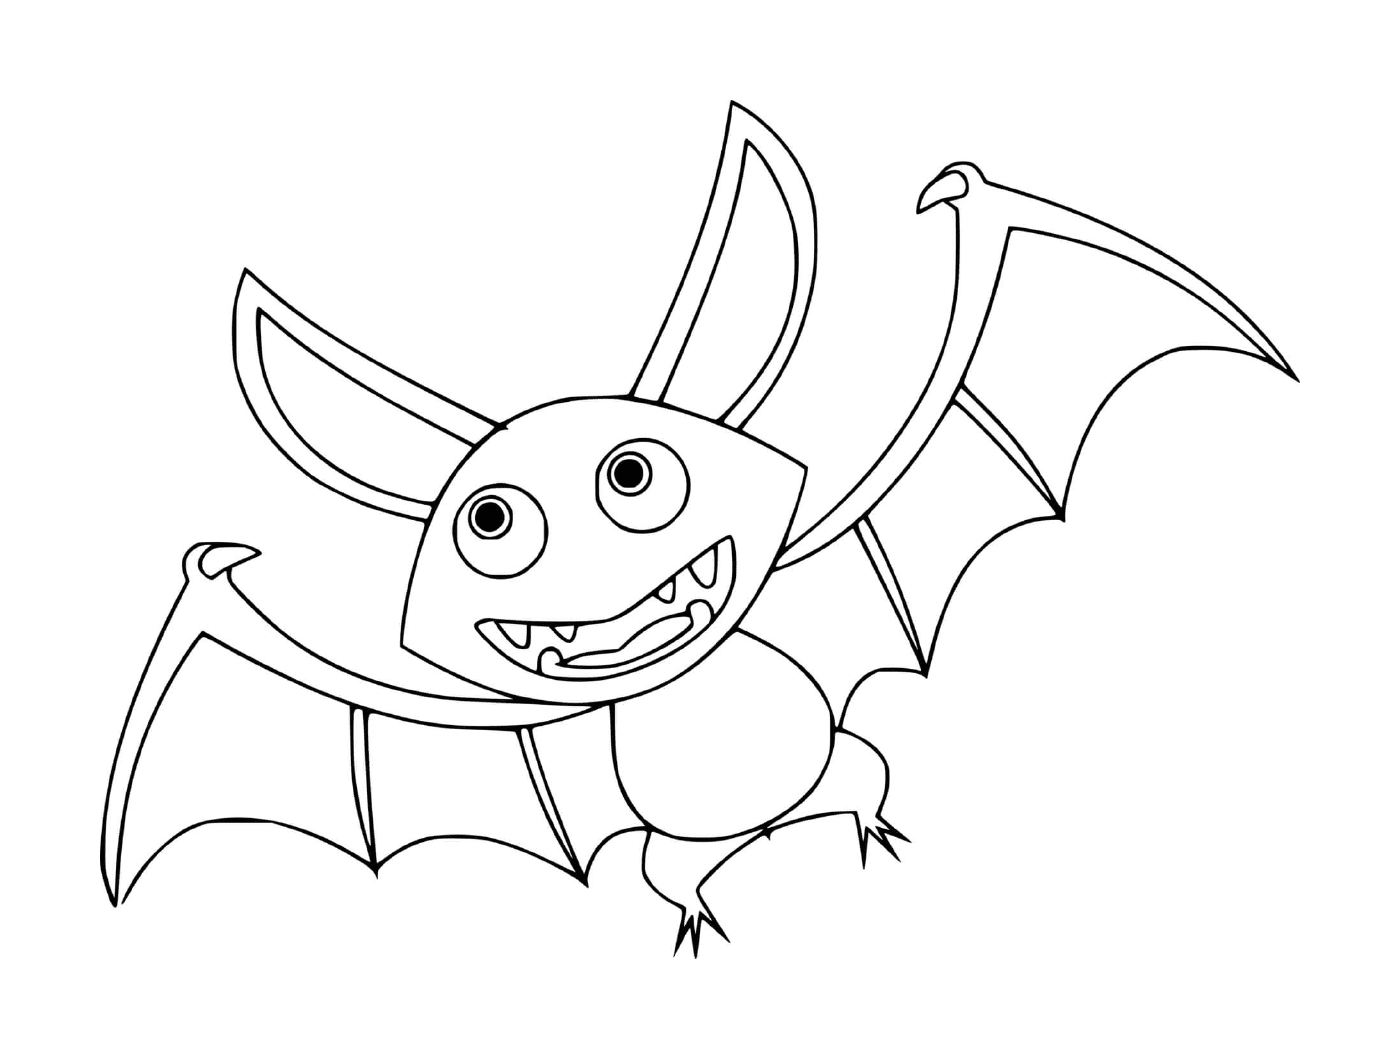  Wild bat in cartoon version 